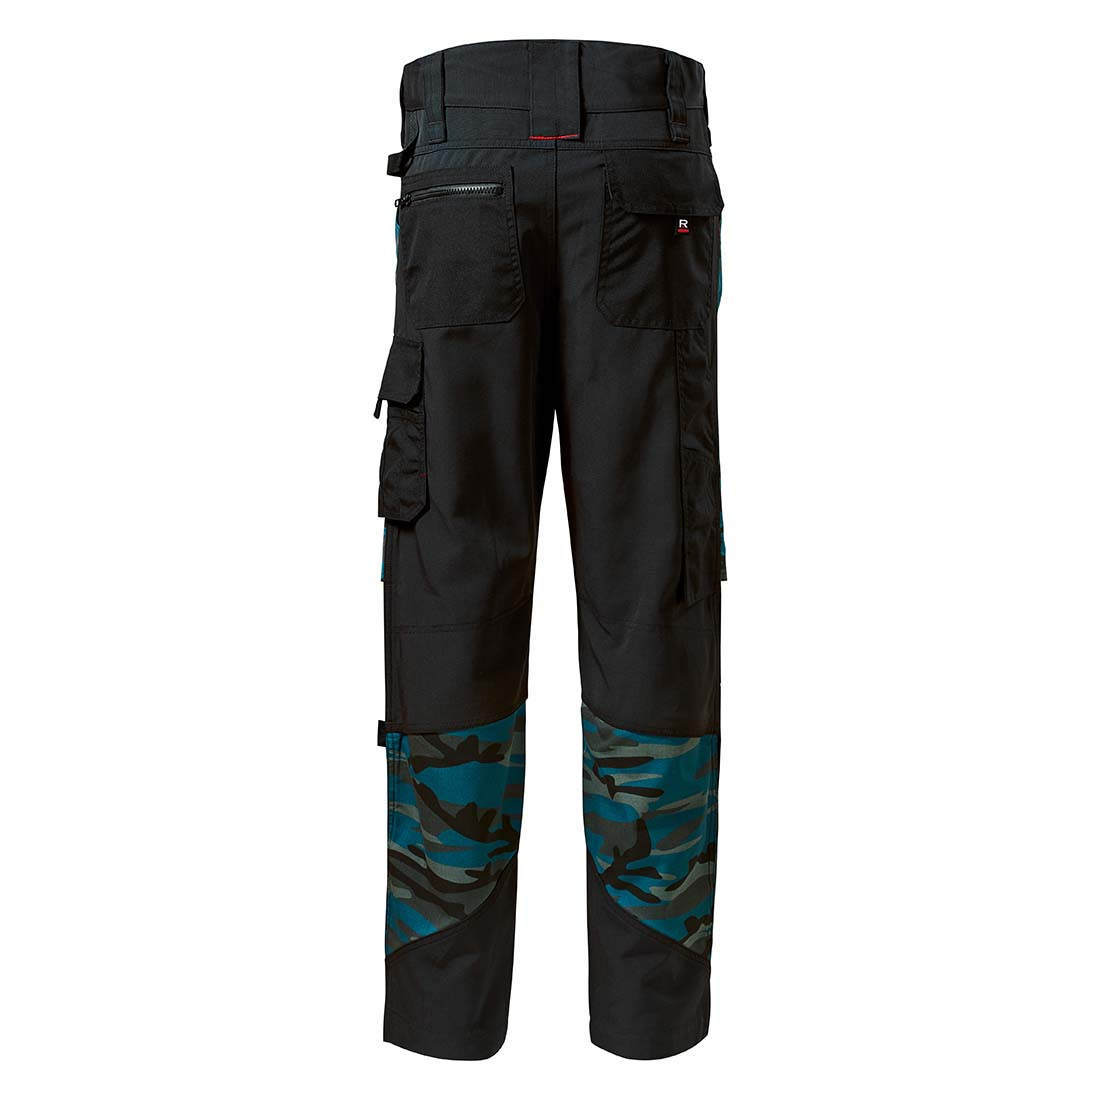 Pantalon de travail homme VERTEX CAMO - Les vêtements de protection